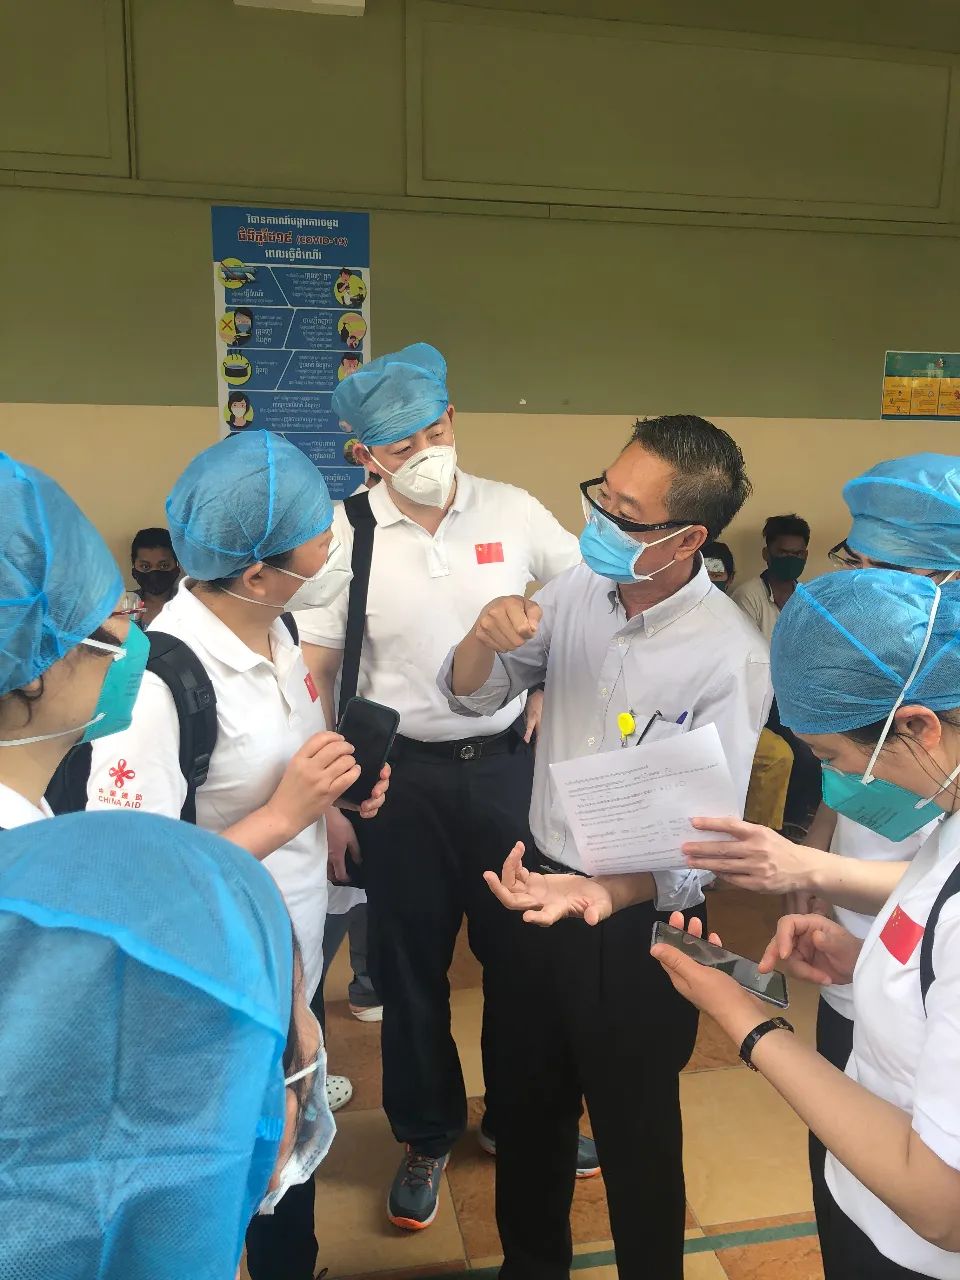  3月24日，中國援柬抗疫醫療專家組在柬蘇友誼醫院調研。新華社發（專家組供圖）